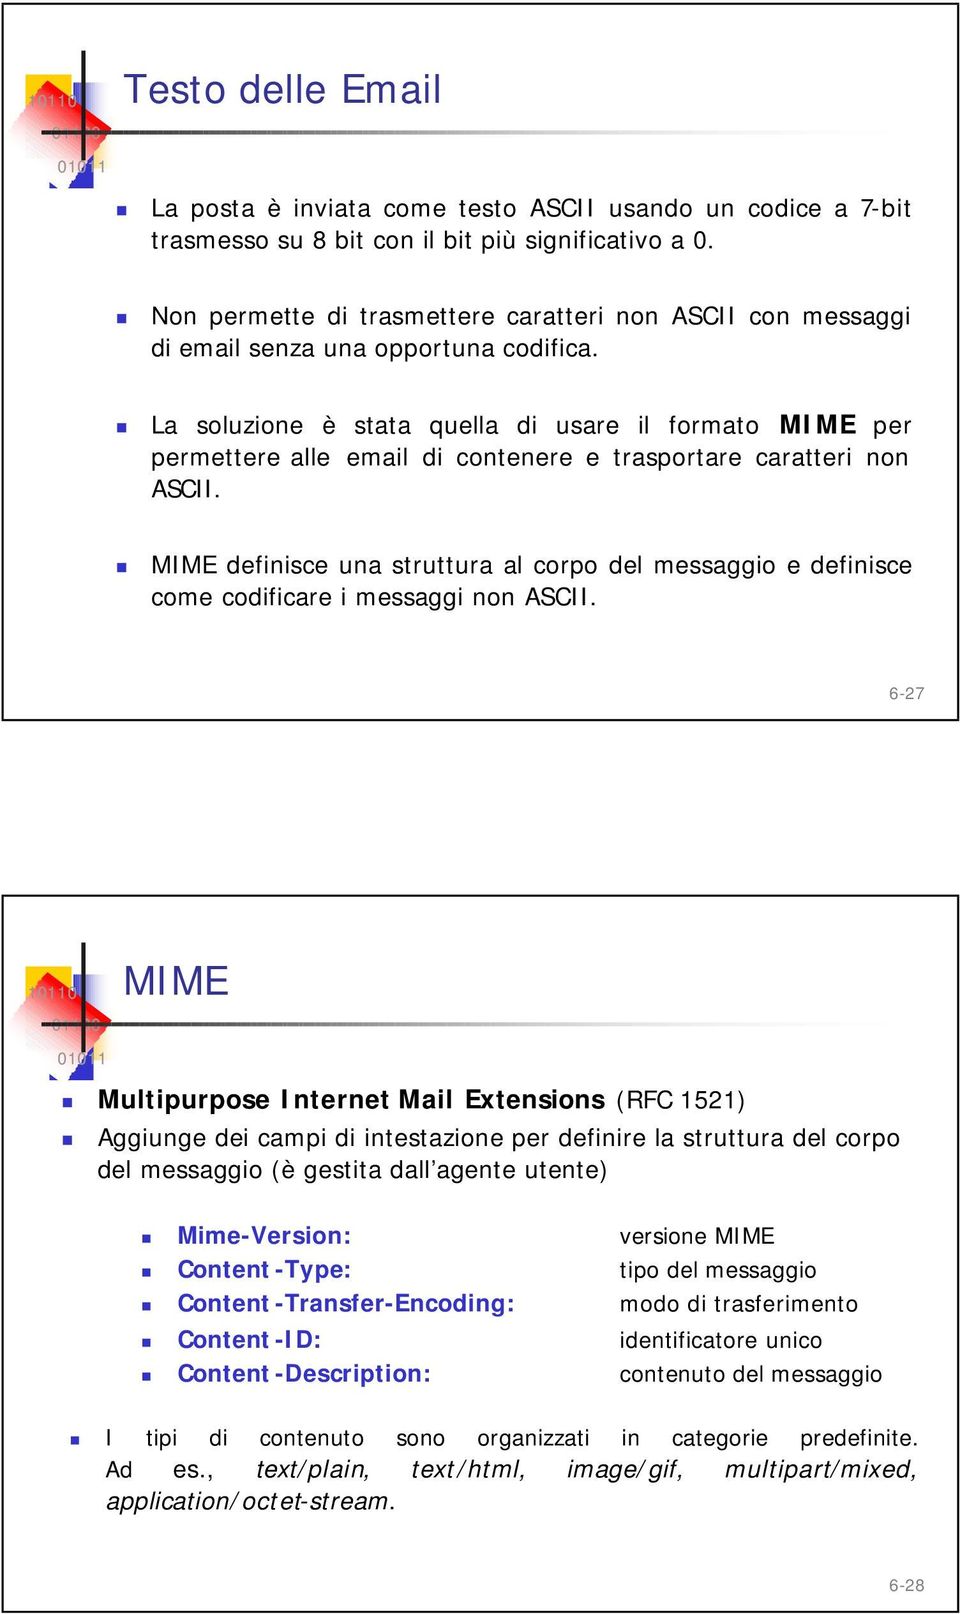 La soluzione è stata quella di usare il formato MIME per permettere alle email di contenere e trasportare caratteri non ASCII.